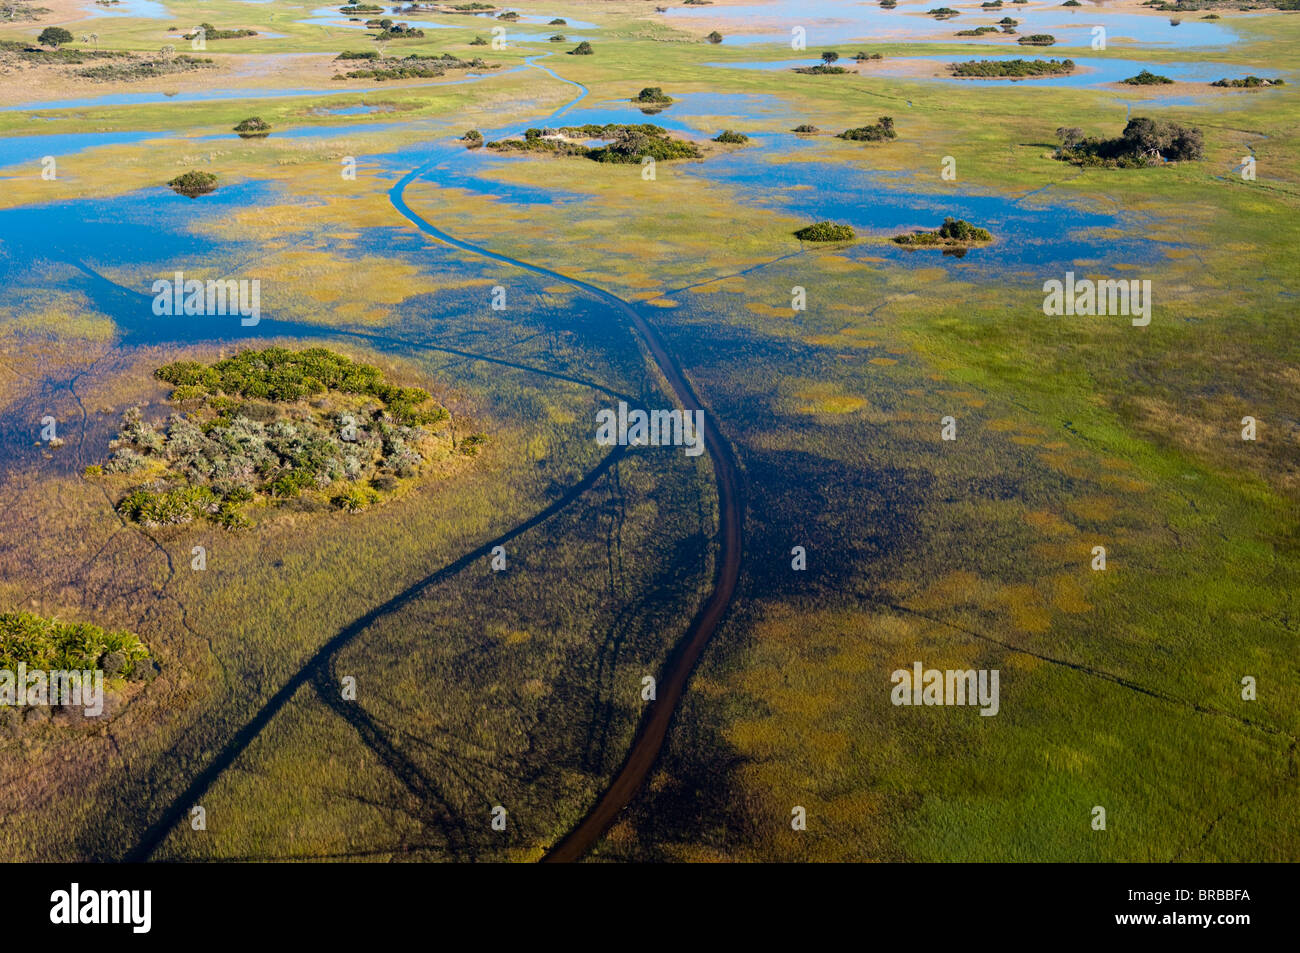 Vue aérienne de Delta de l'Okavango, au Botswana Banque D'Images